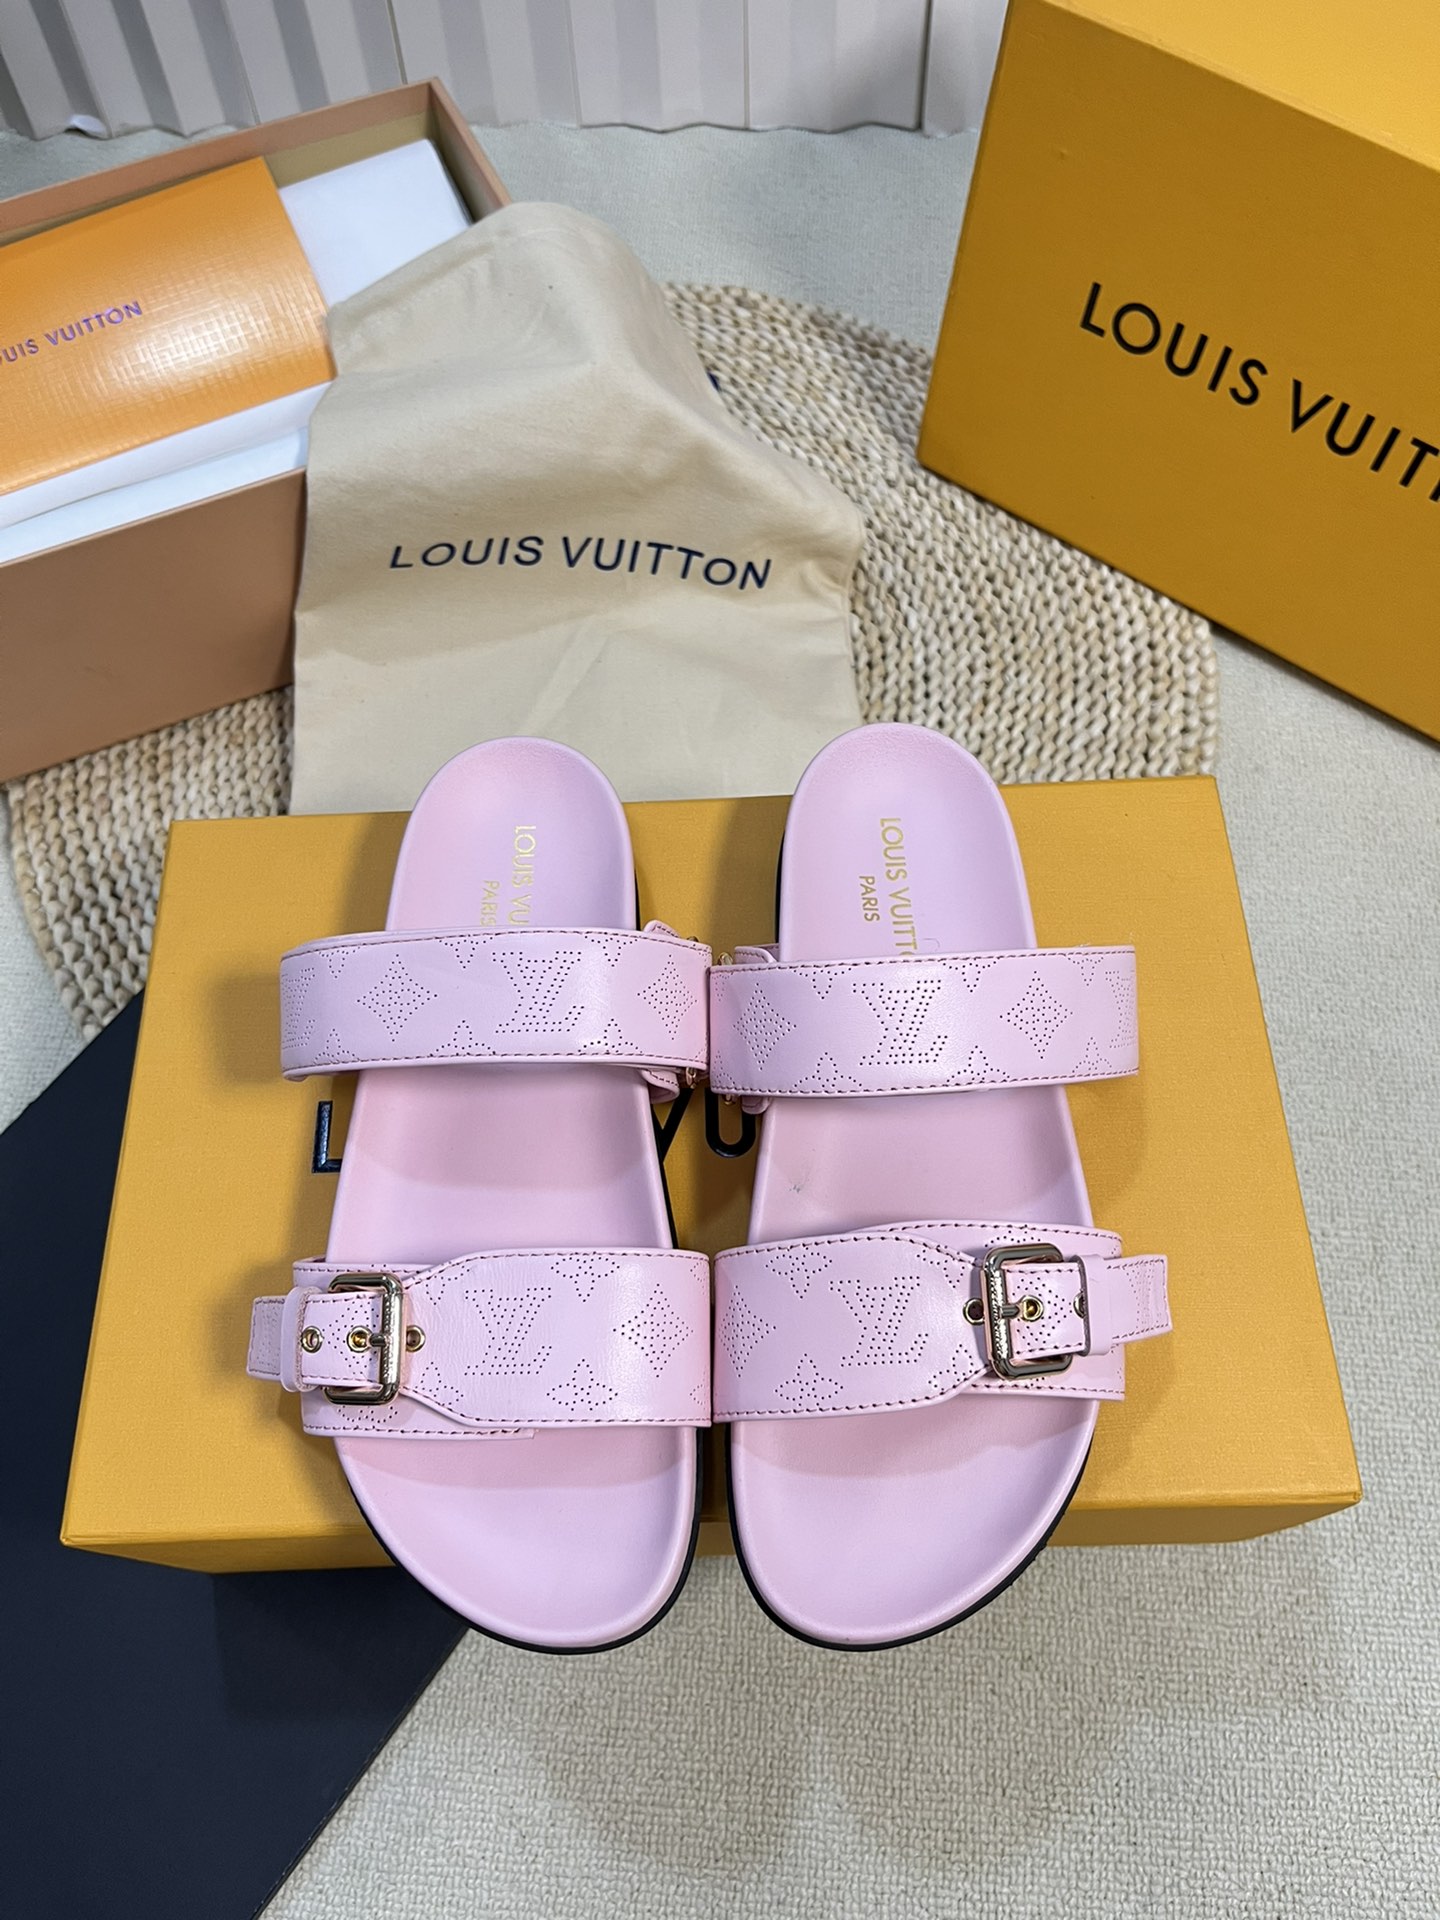 Louis Vuitton Scarpe Pantofole Incisione Pelle bovina Gomma di pecora Collezione Primavera/Estate